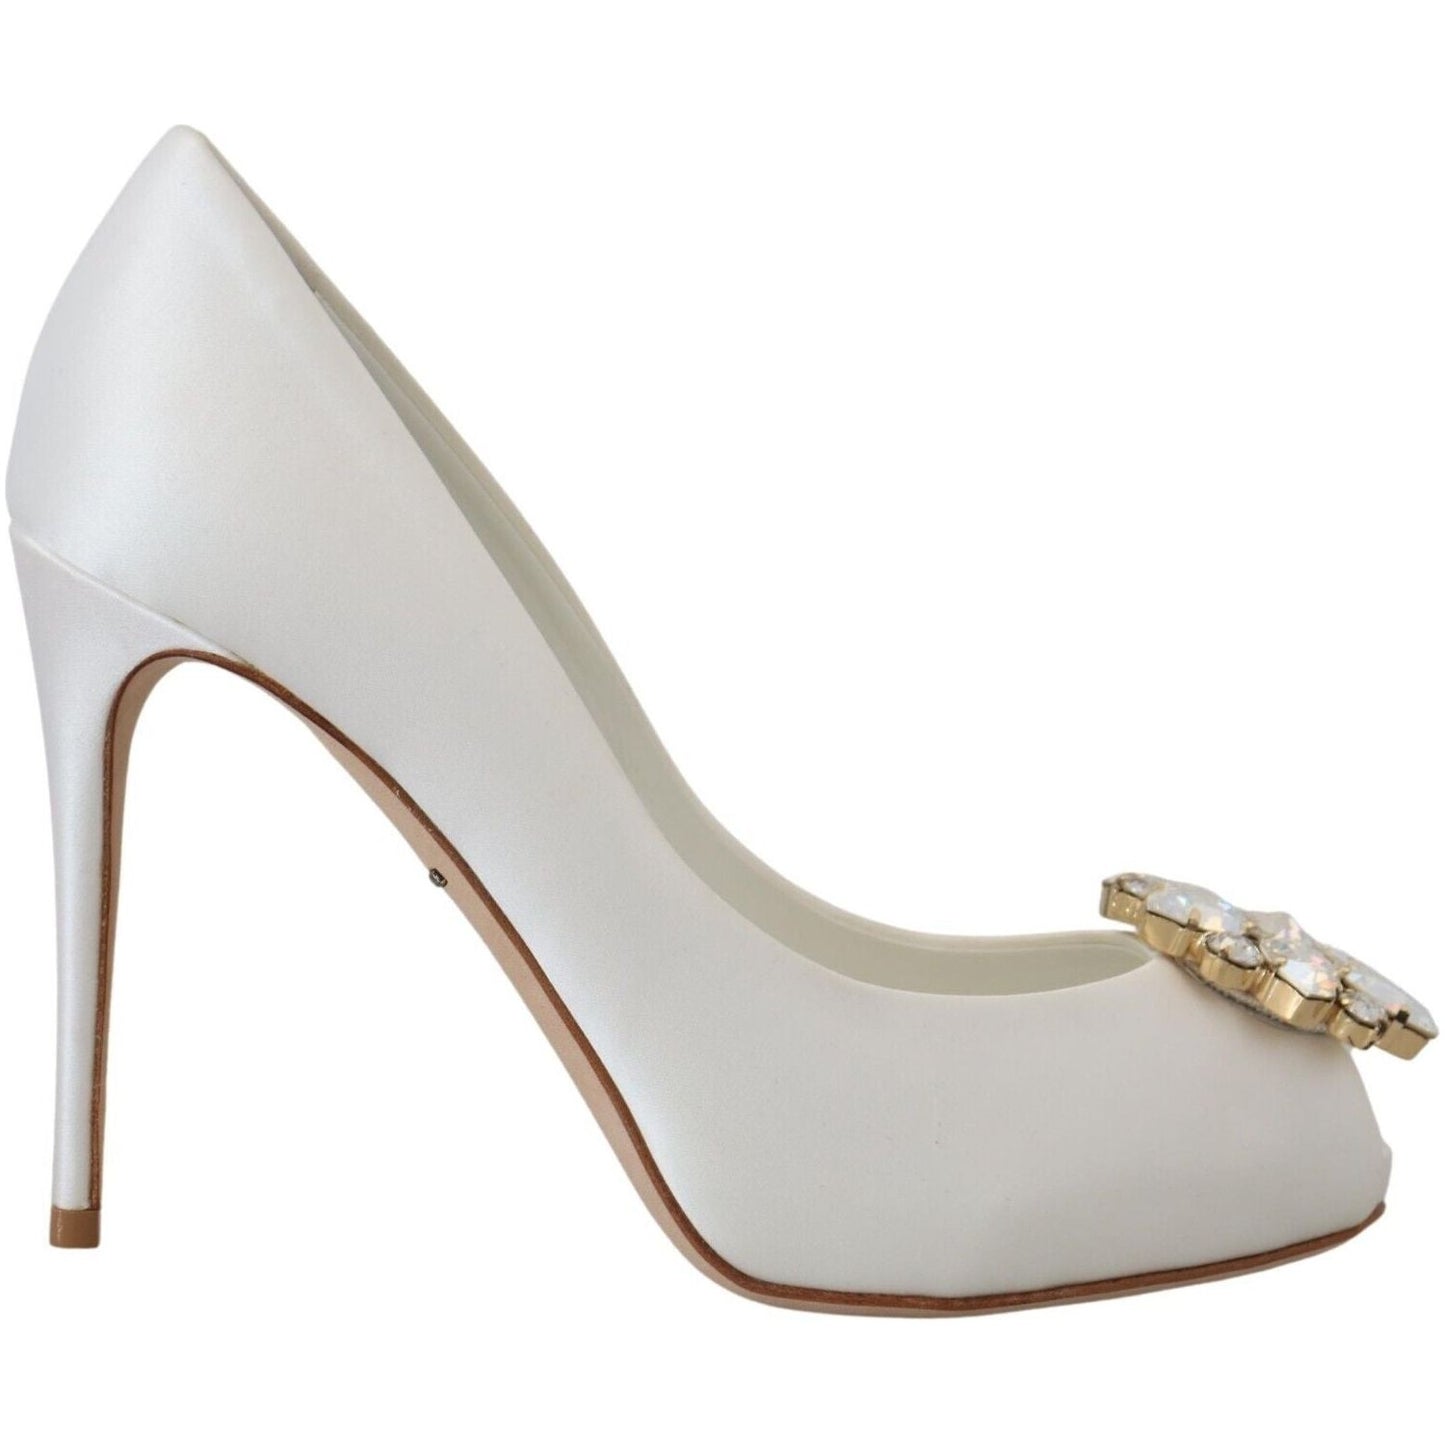 Dolce & Gabbana | Crystal-Embellished White Peep Toe Heels| McRichard Designer Brands   